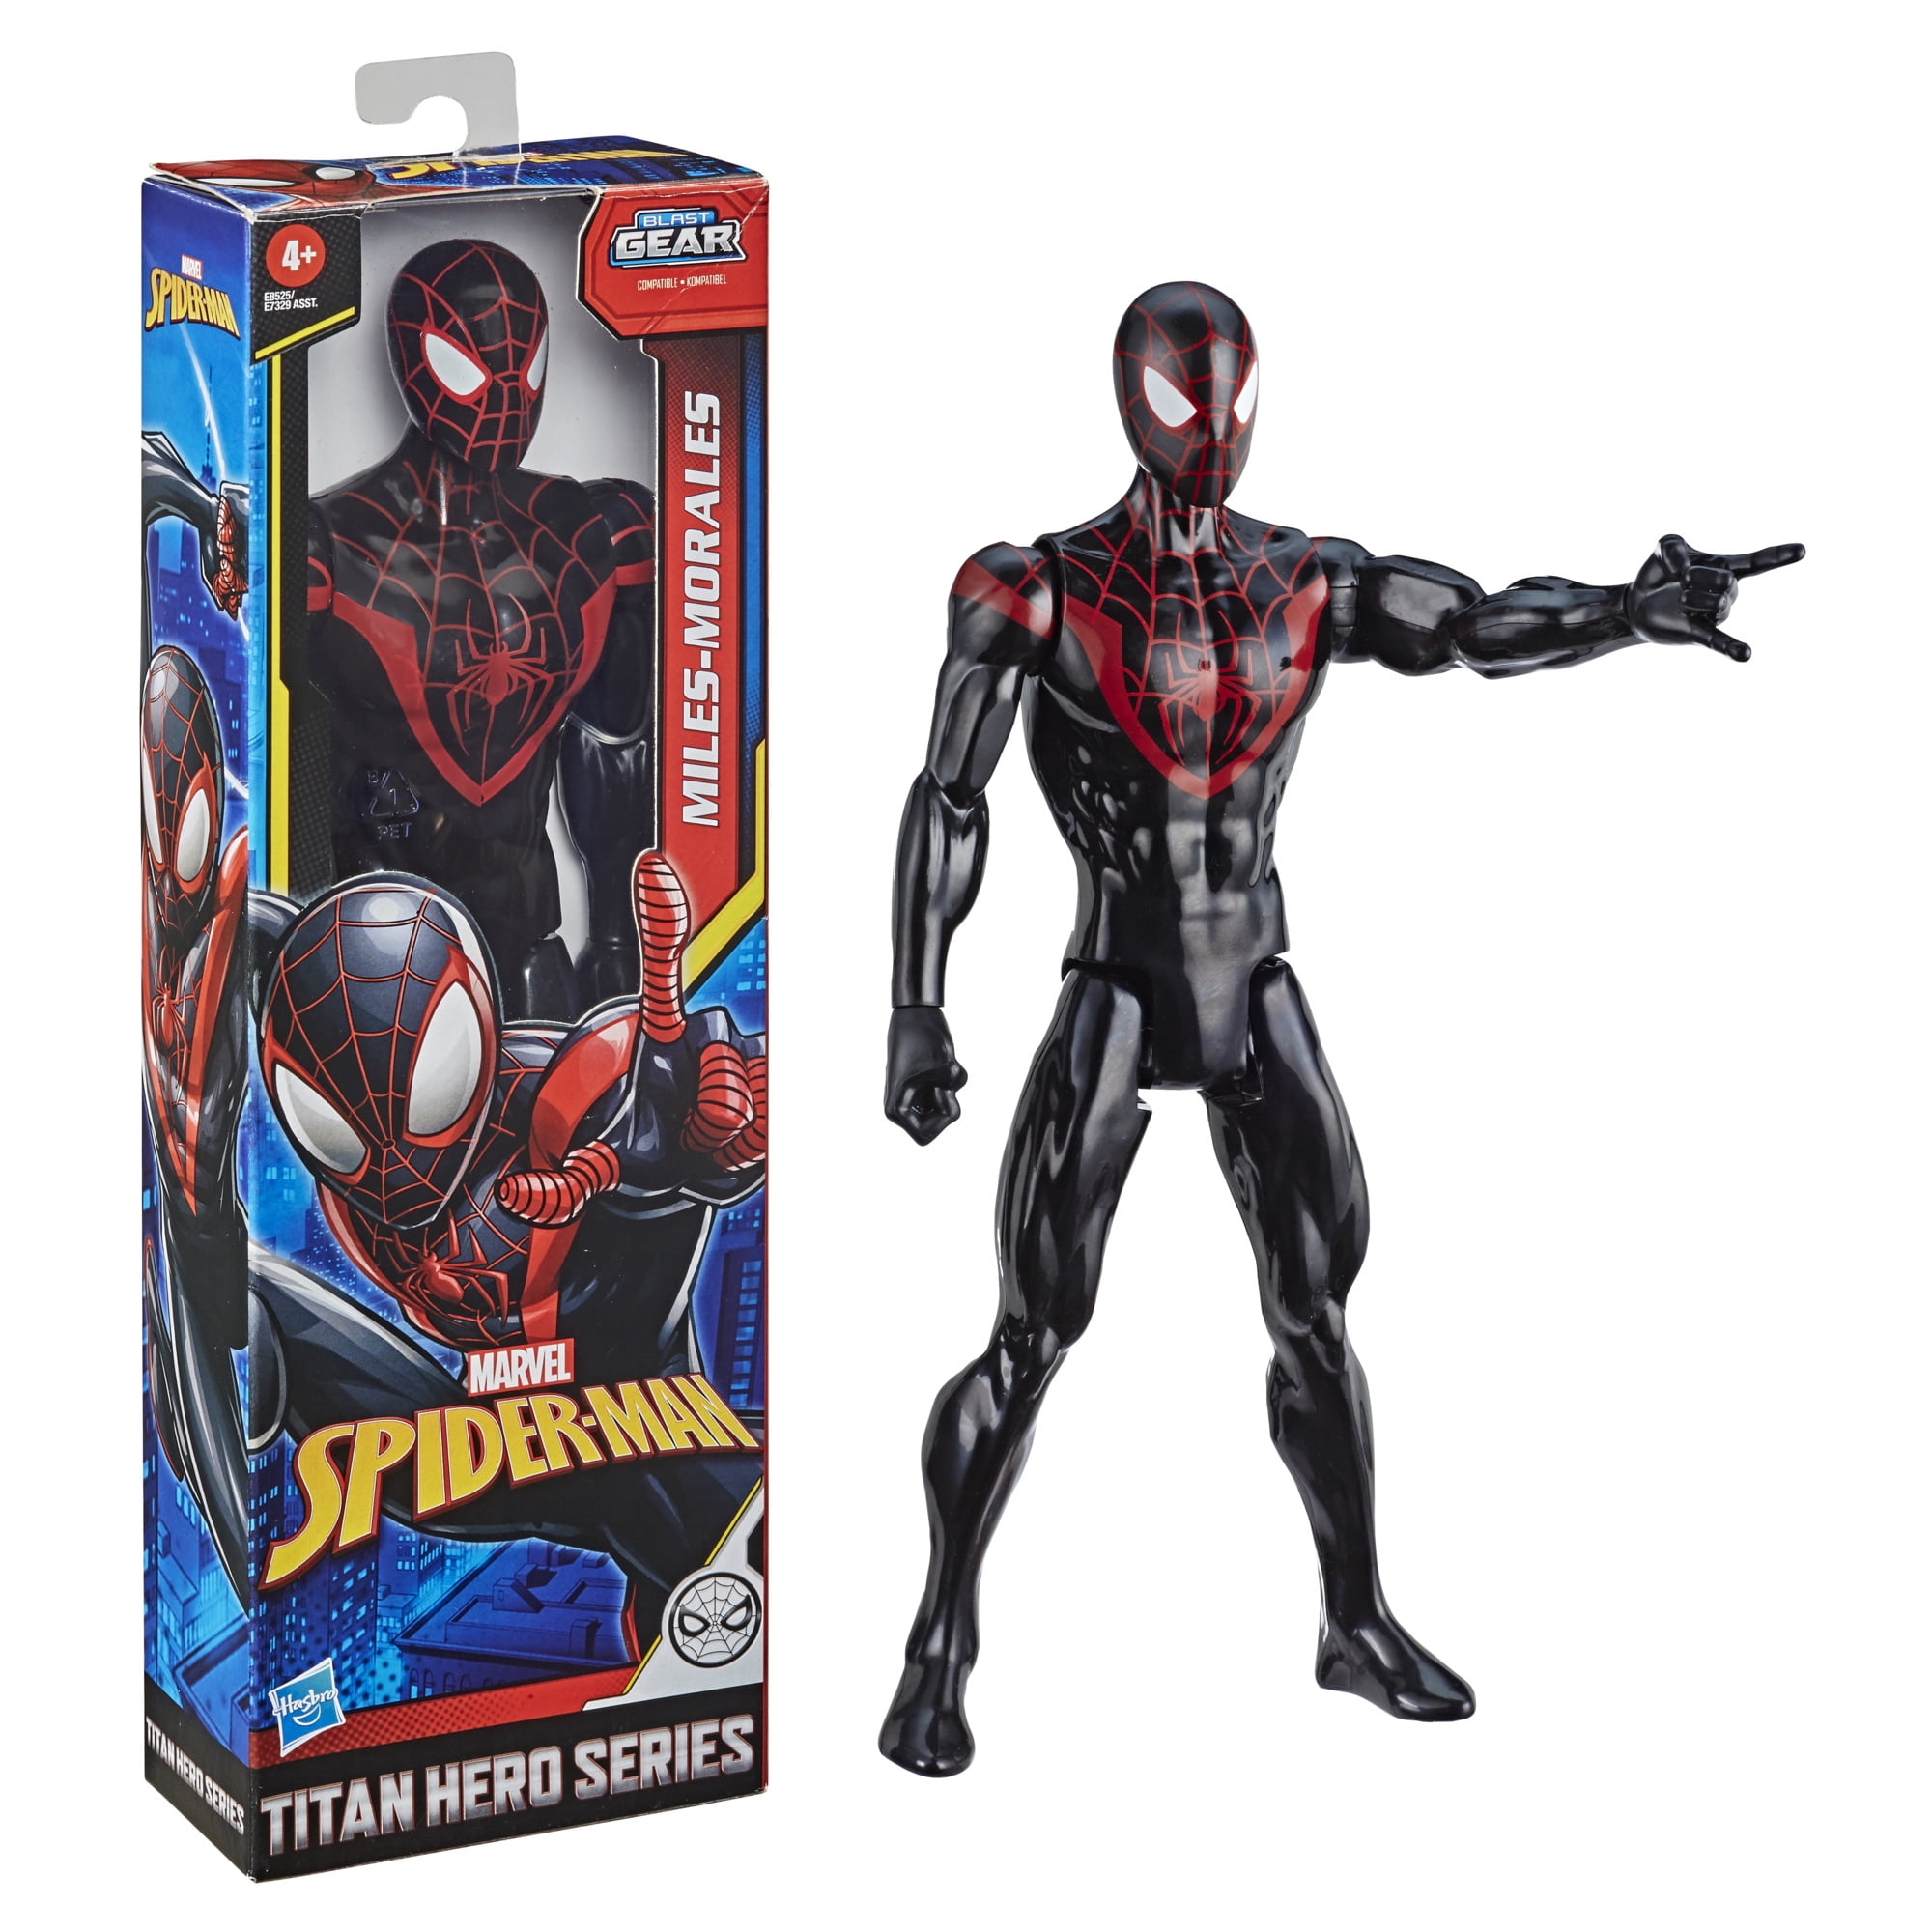 Nova figura de Miles Morales de Marvel's Spider-Man 2 gera